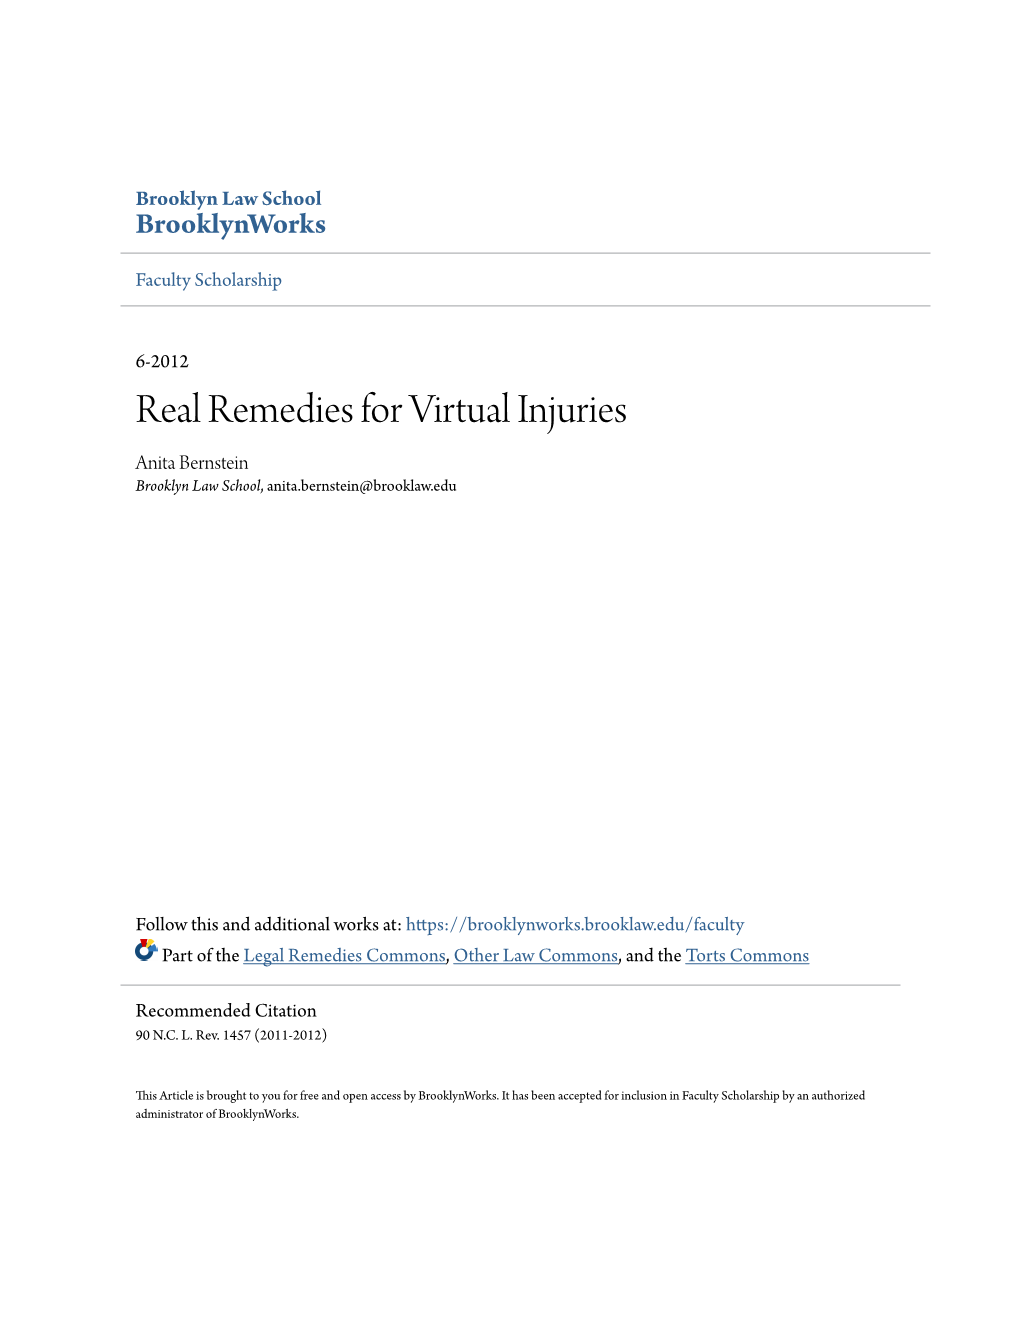 Real Remedies for Virtual Injuries Anita Bernstein Brooklyn Law School, Anita.Bernstein@Brooklaw.Edu